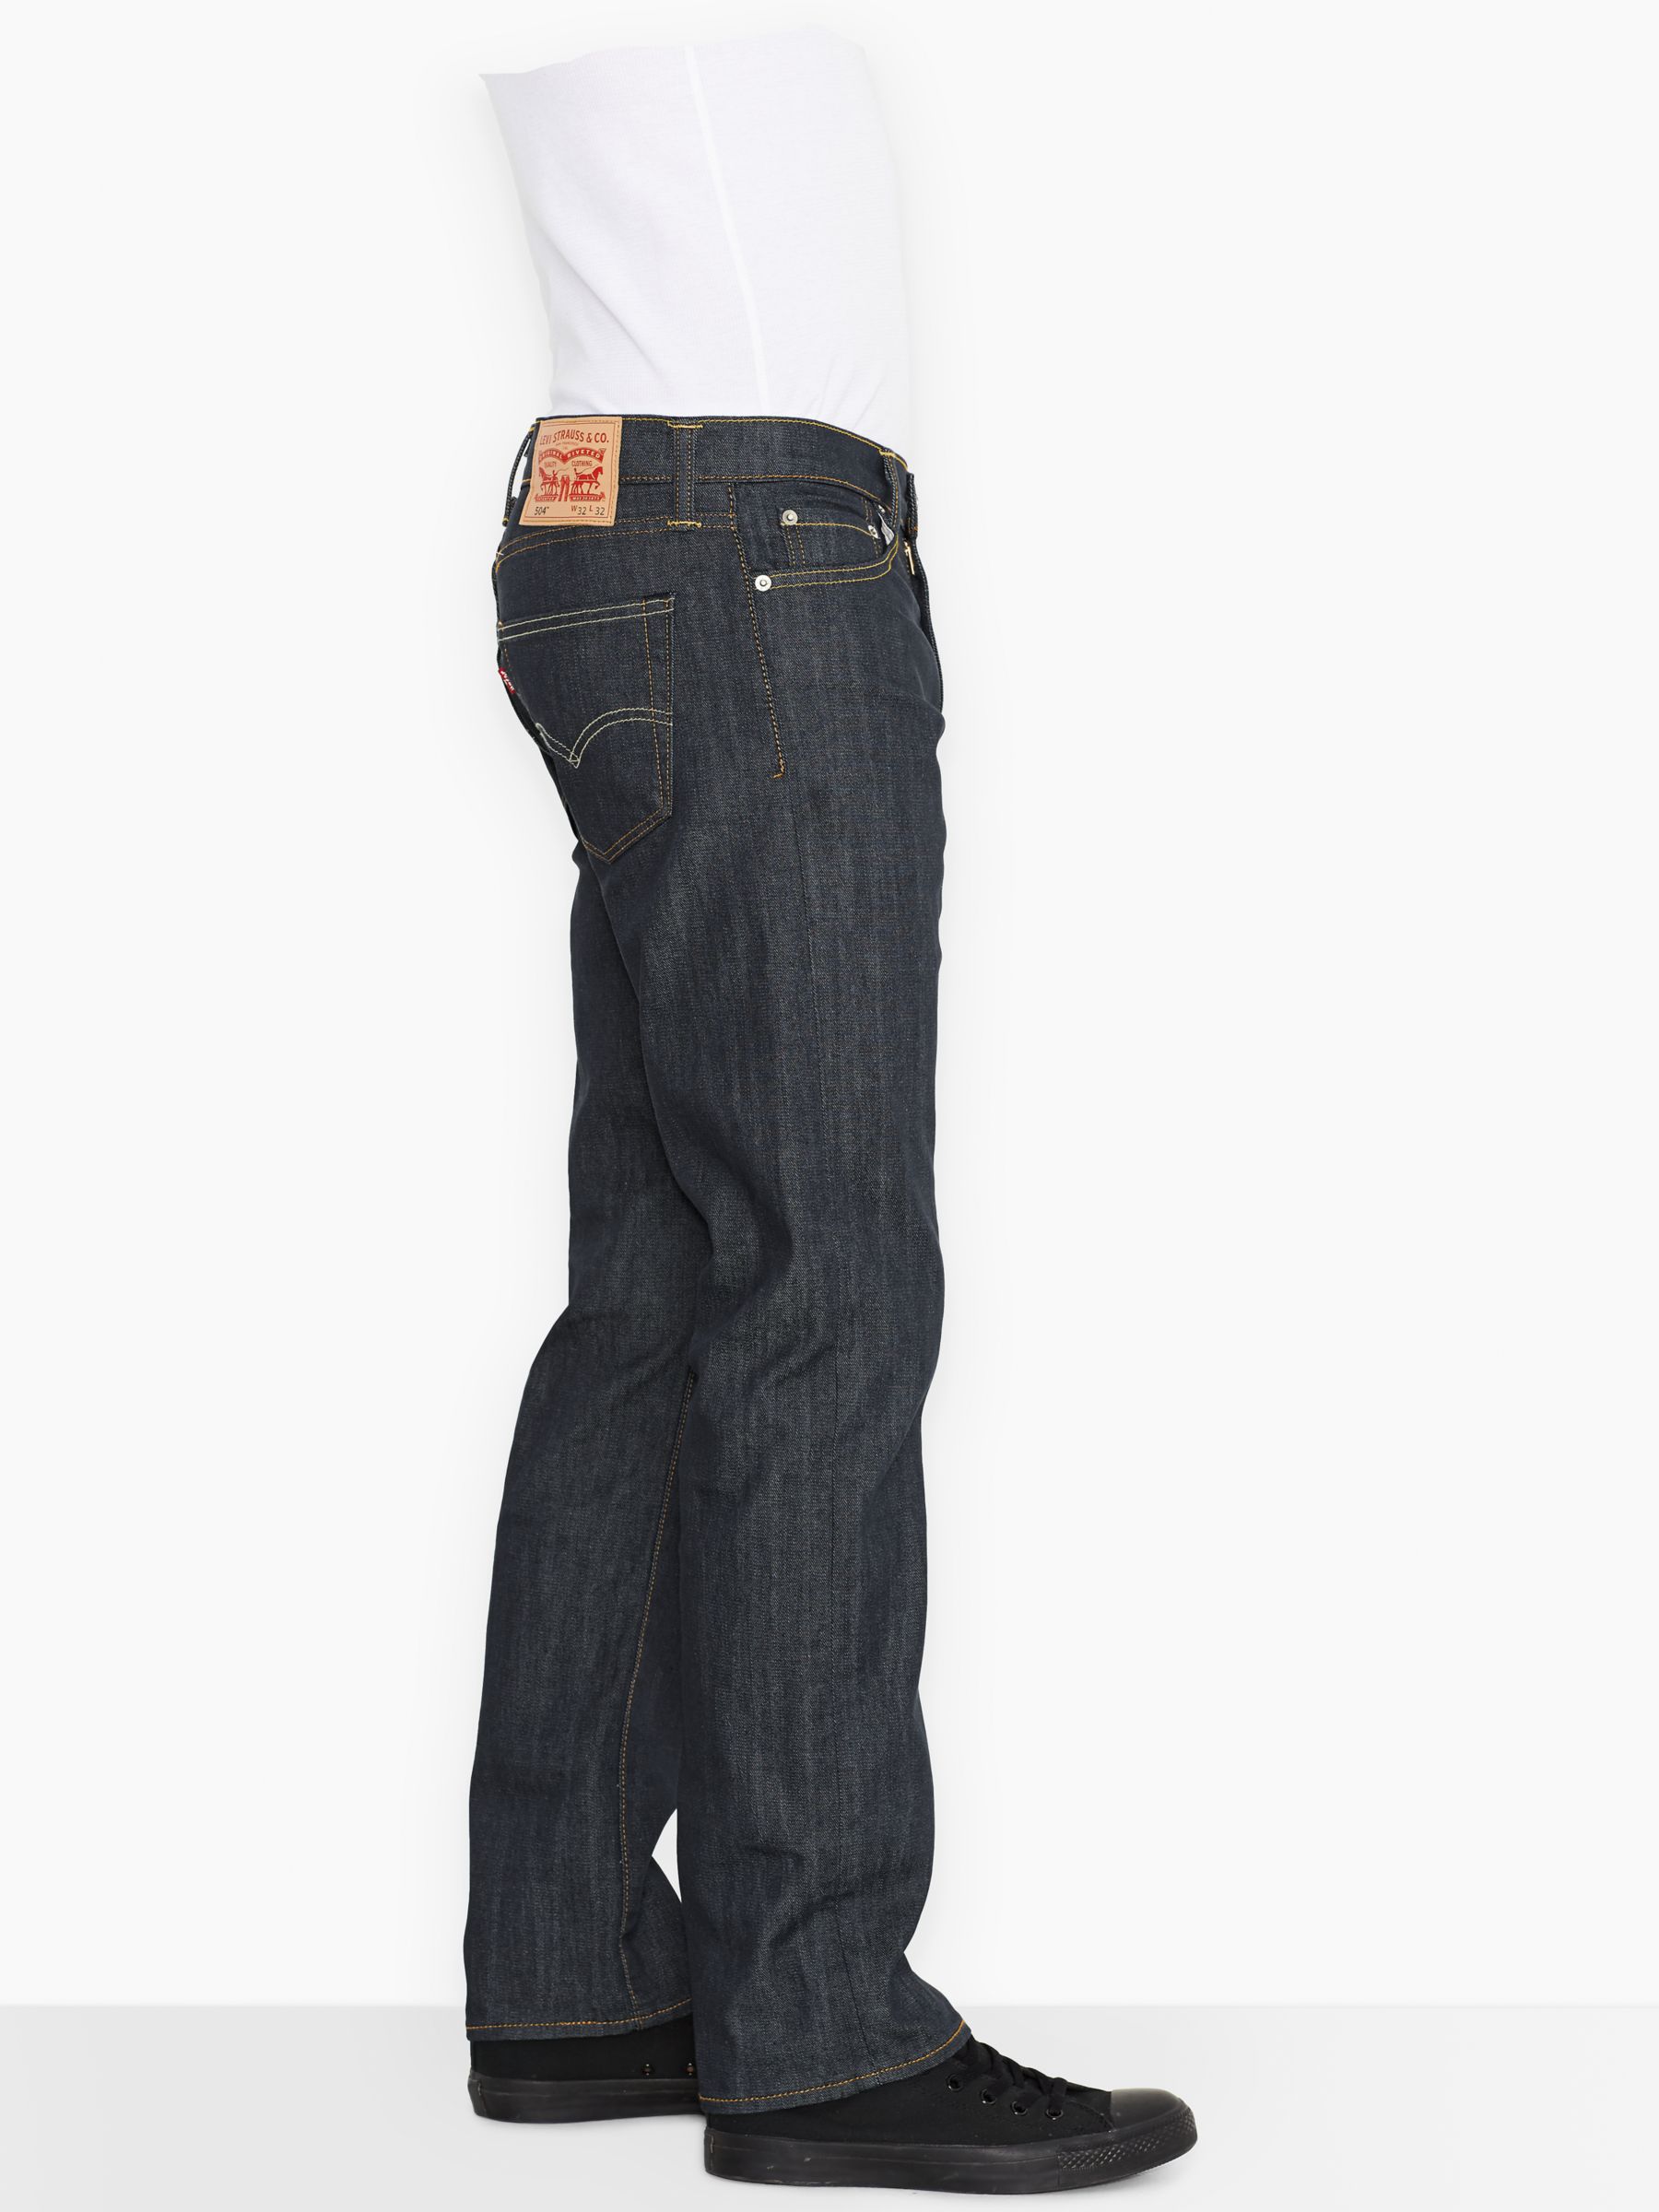 activarea levis jeans 504 